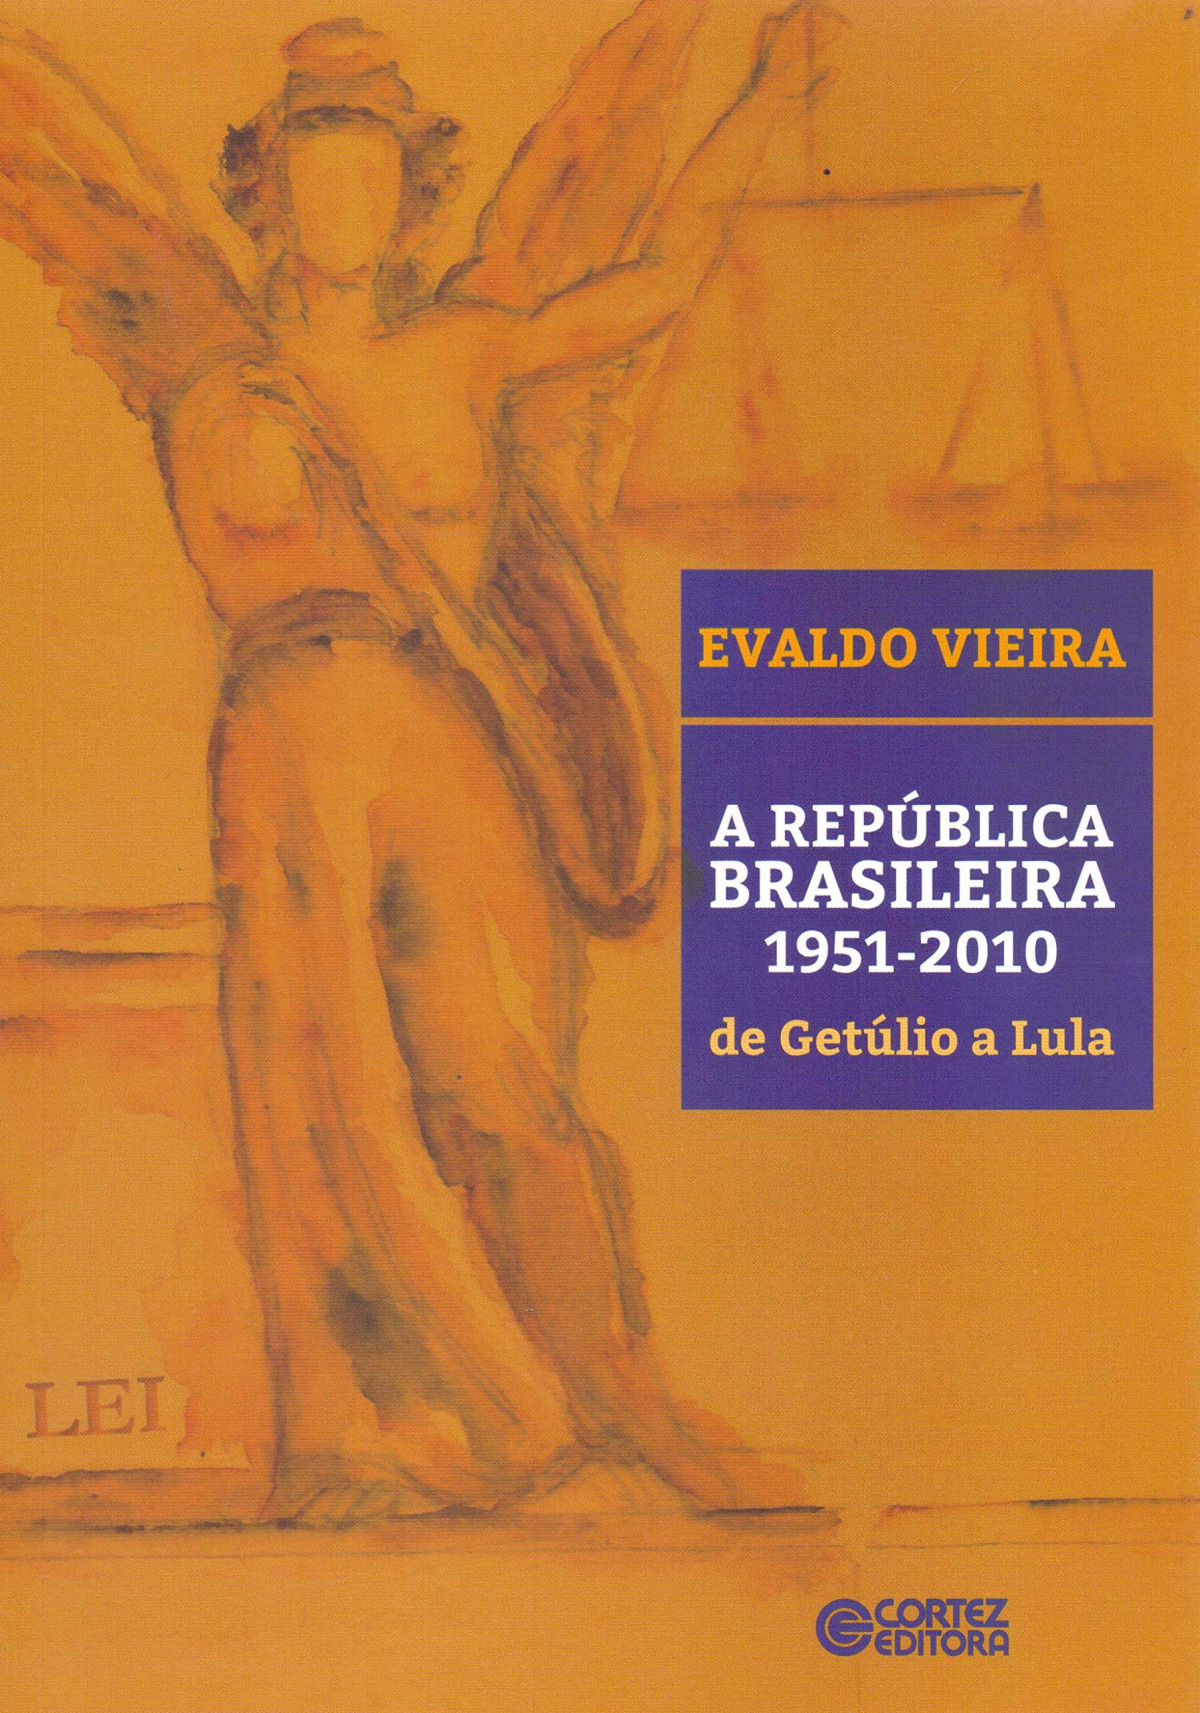 A república brasileira: 1951-2010 - de Getúlio a Lula - Evaldo Vieira